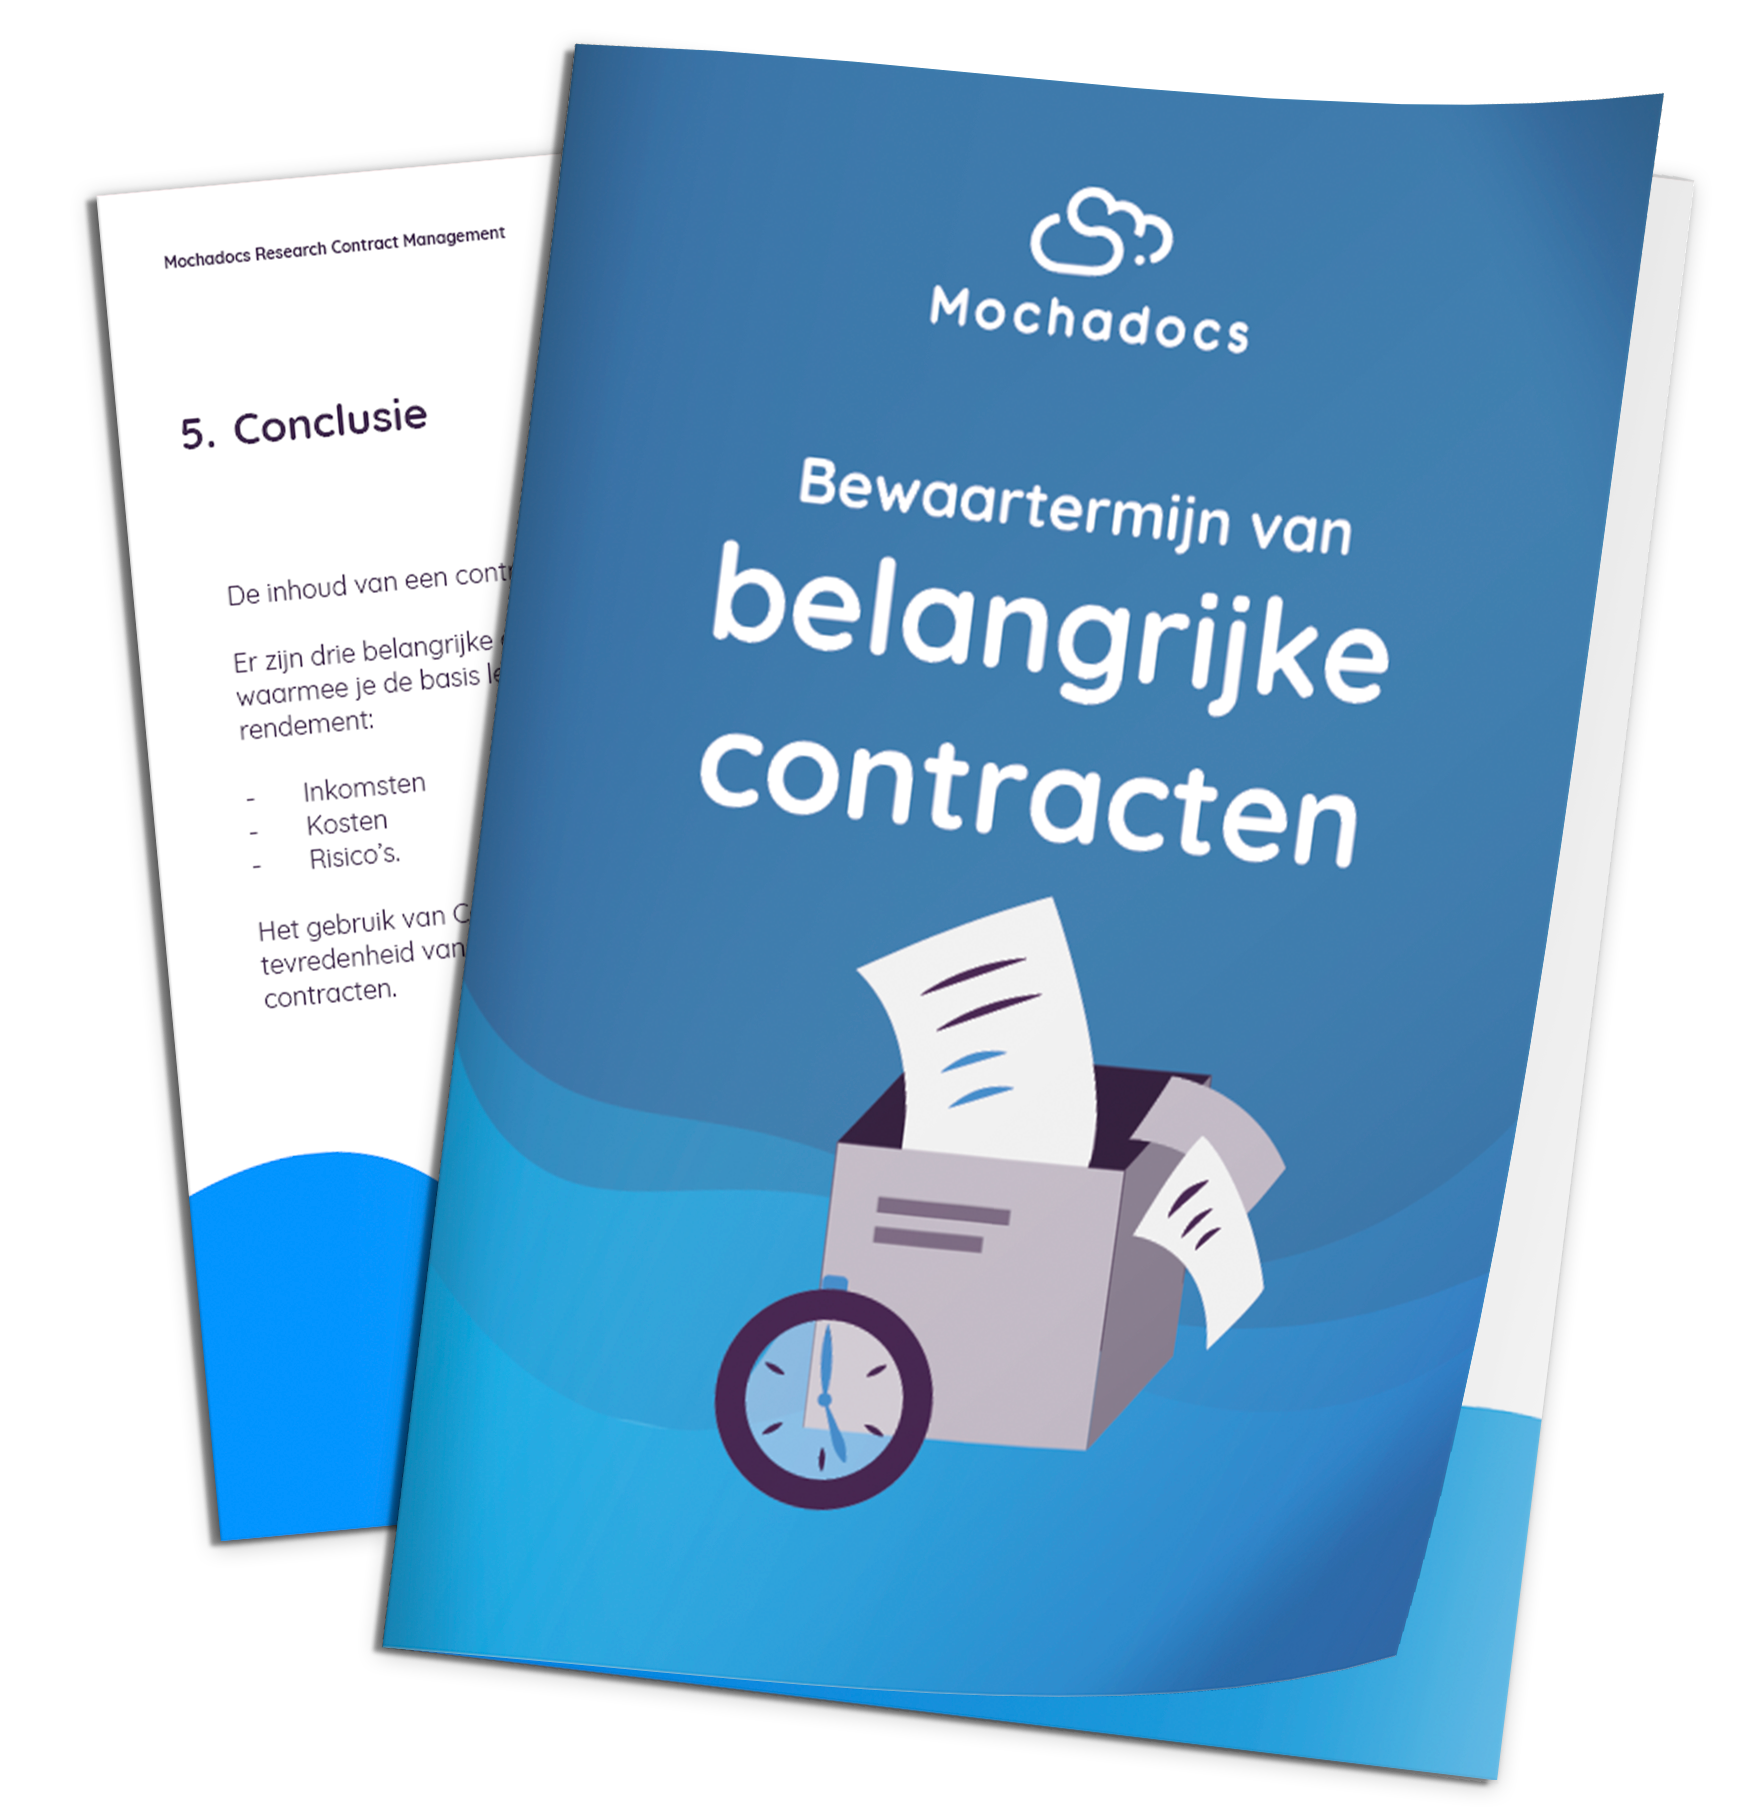 Mochadocs - Contract Management - eBook - Bewaartermijn van belangrijke contracten